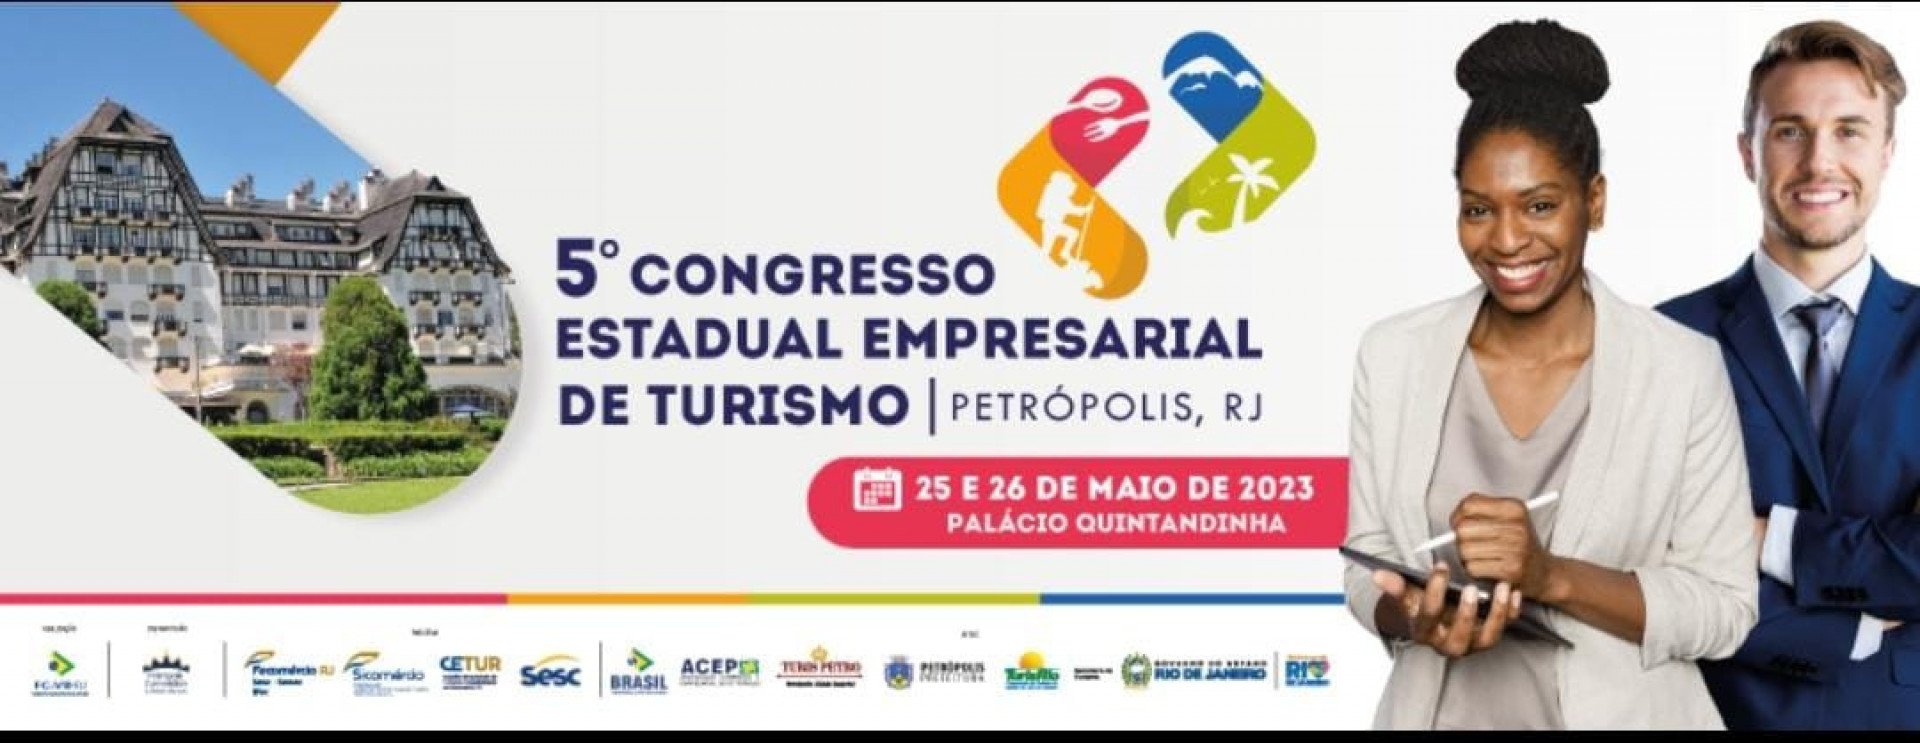 O V Congresso Estadual Empresarial de Turismo do Estado do Rio de Janeiro é realizado pela Federação de Convention &Visitors Bureaux do Estado do Rio de Janeiro (FC&VB-RJ) - Divulgação